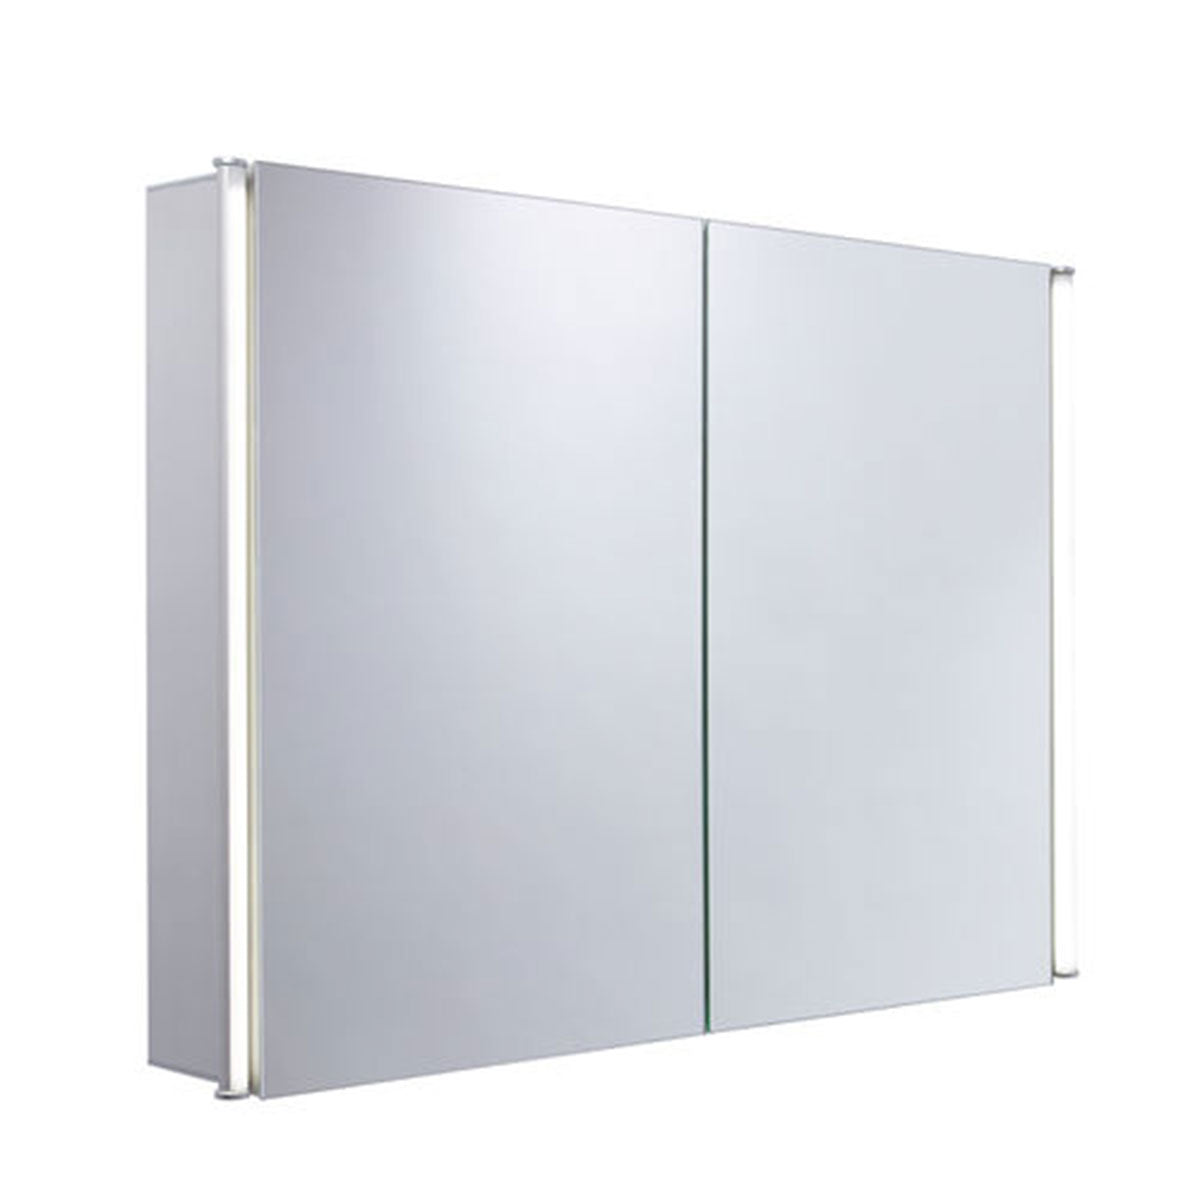 Tavistock Sleek 1000mm Double Door Mirror Cabinet With LED Lighting